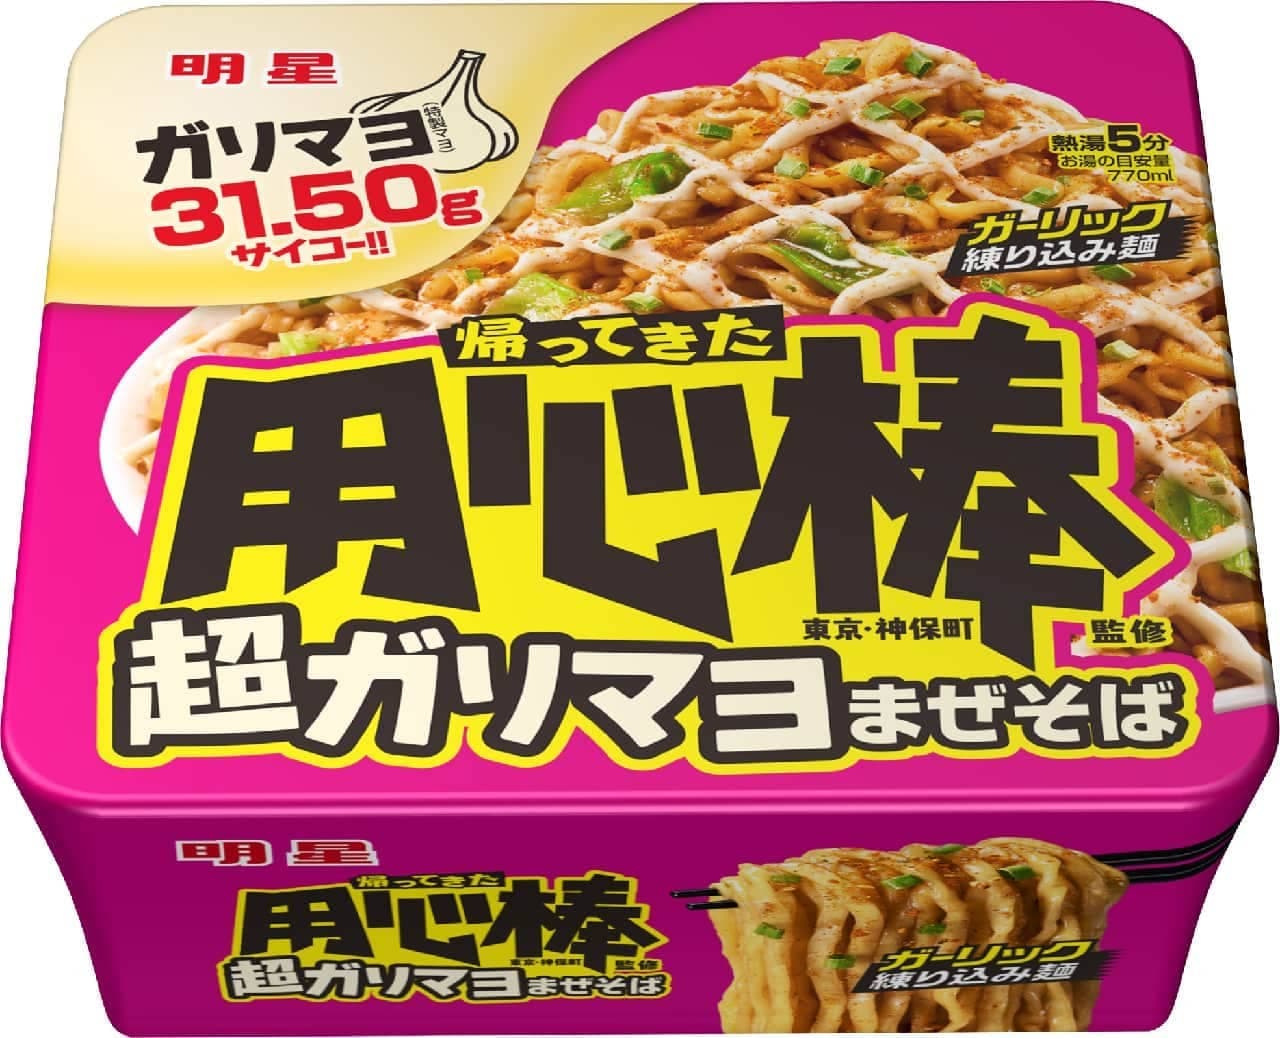 Myojo Foods "Myojo Bouncer Supervised Super Garimayo Mazesoba"